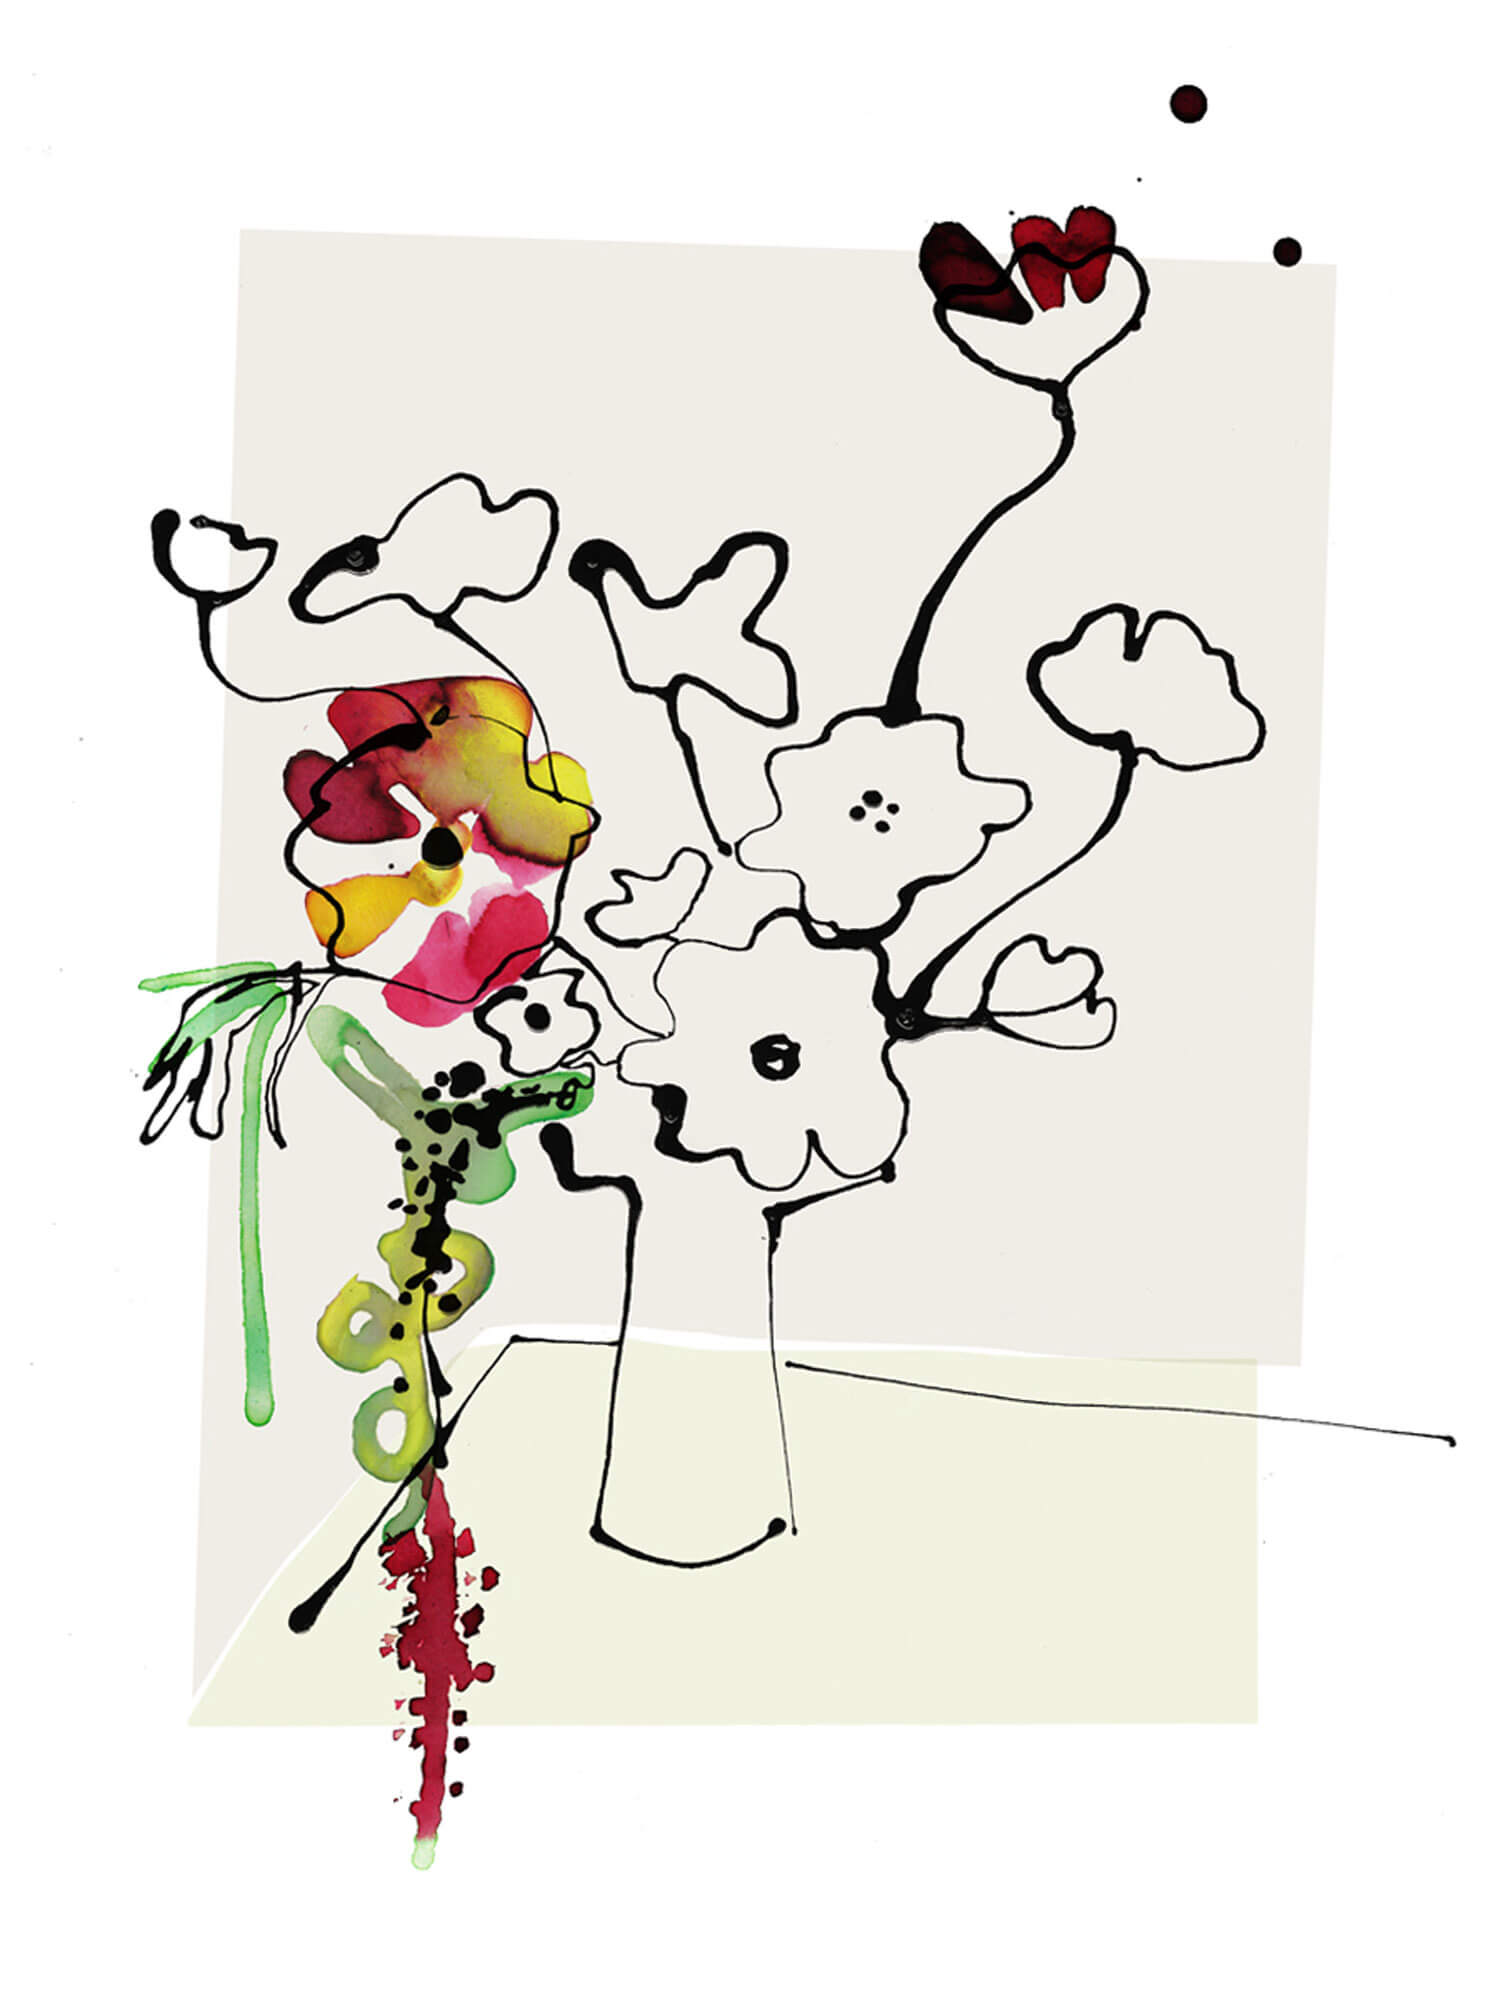 Florals – Illustrating Spring’s Arrival